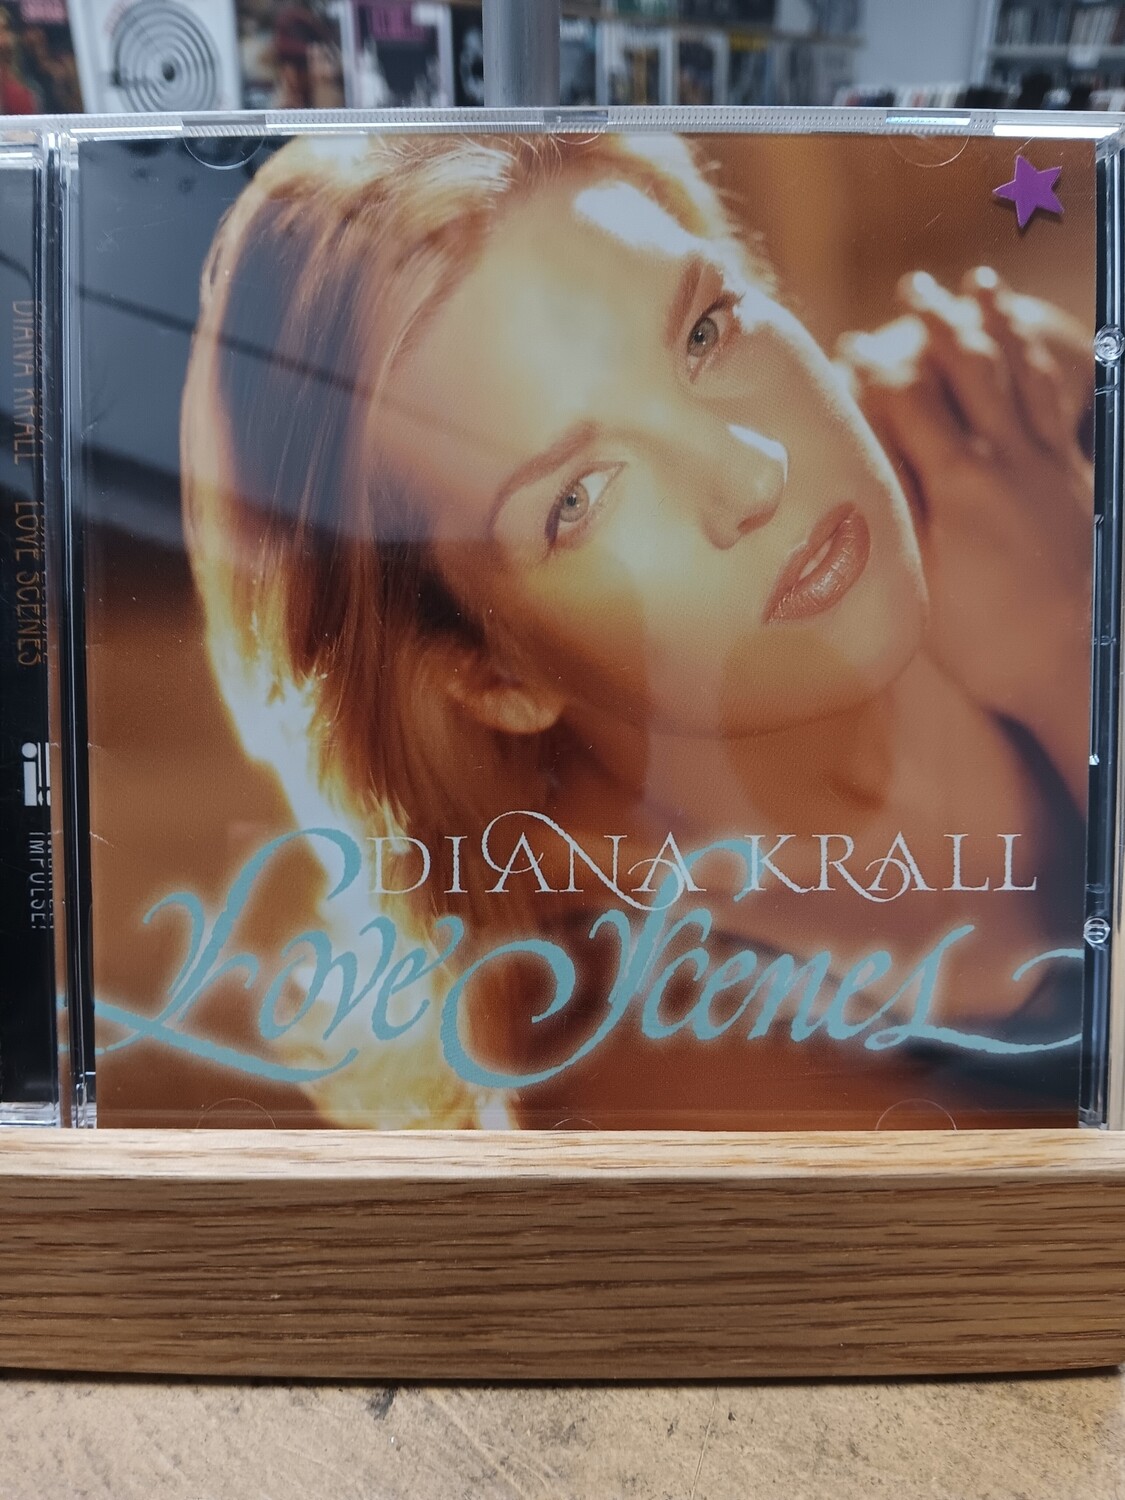 DIANA KRALL - Love scenes (CD)